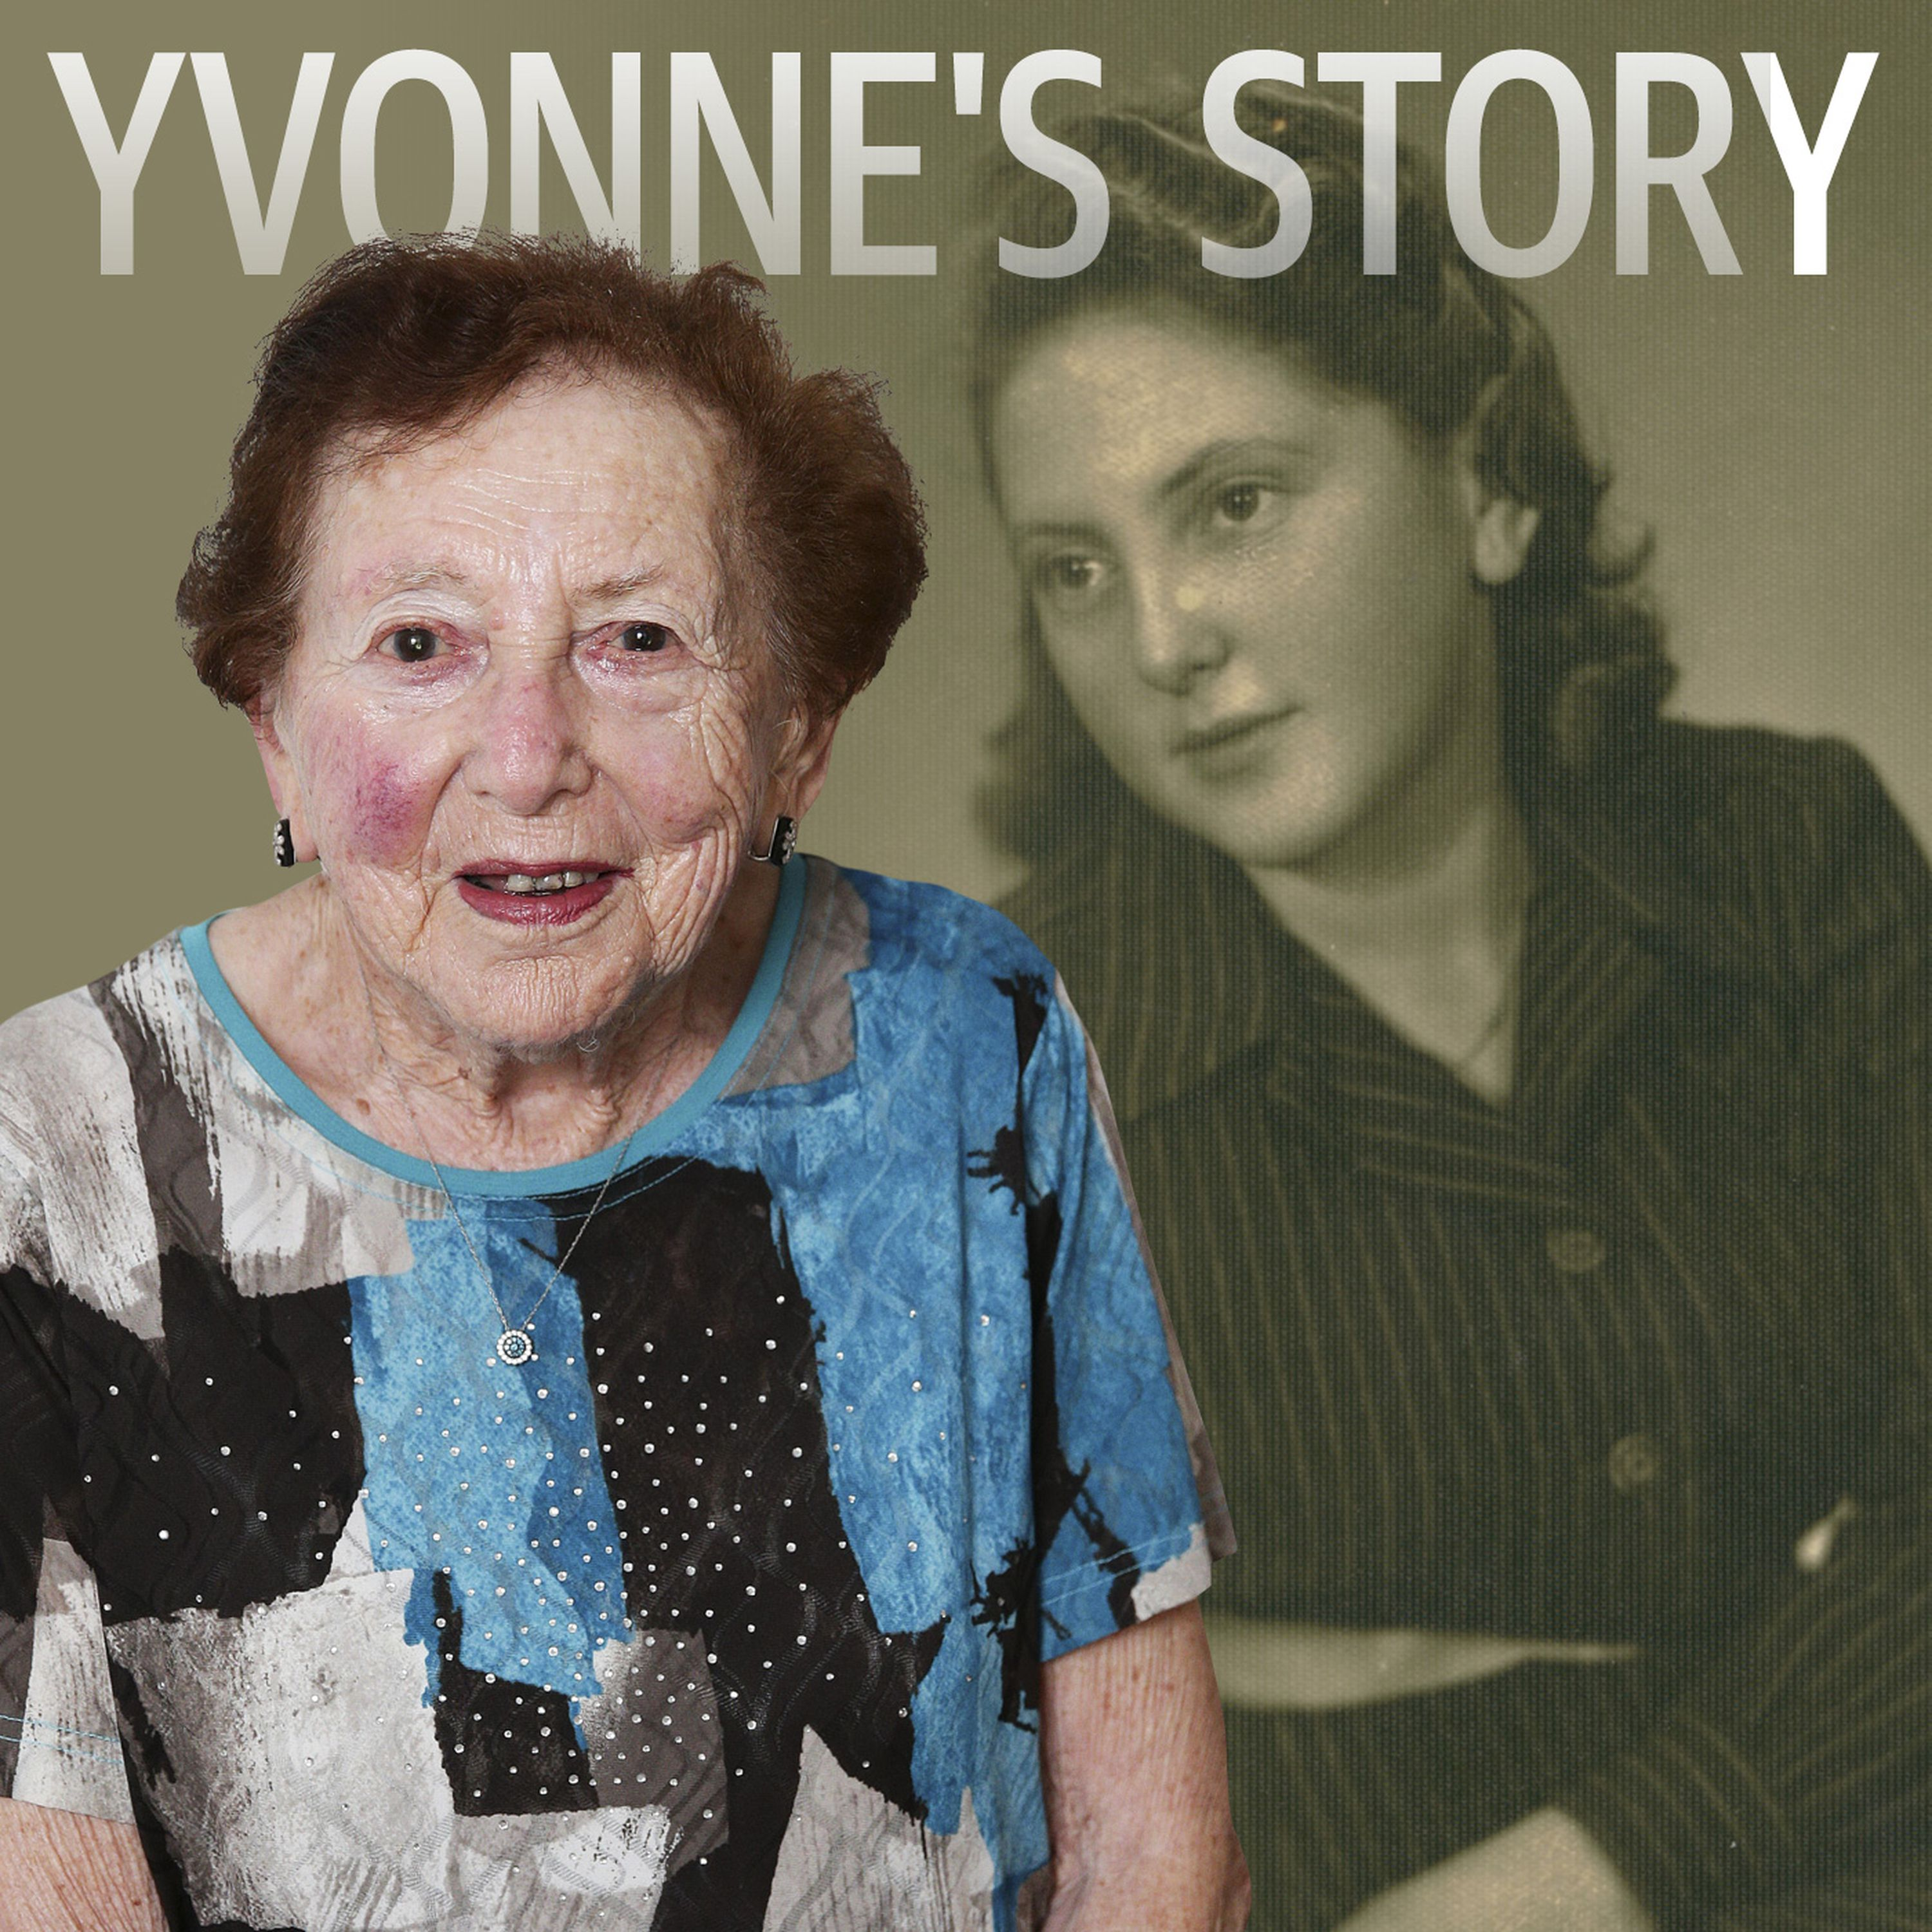 Yvonne's Story